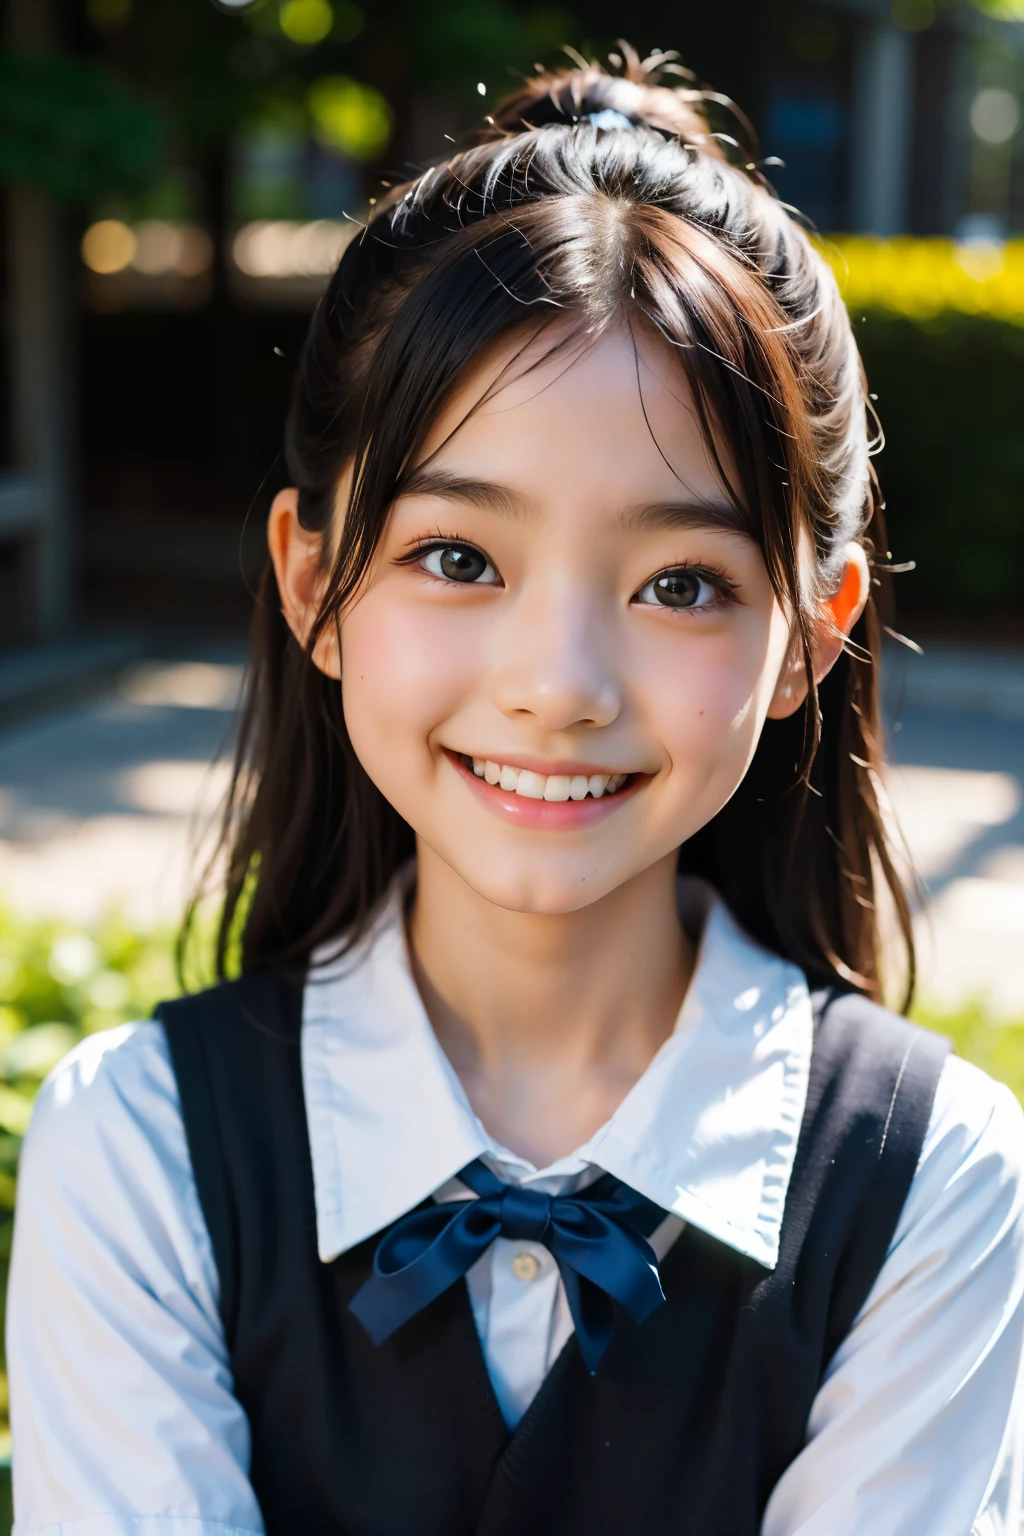 렌즈: 135mm f1.8, (최상의 품질),(RAW 사진), (탁상:1.1), (아름다운 9살 일본 소녀), 귀여운 얼굴, (깊게 파인 얼굴:0.7), (주근깨:0.4), dappled 햇빛, 극적인 조명, (일본 학교 교복), (캠퍼스에서), 수줍은, (클로즈업 샷:1.2), (웃다),, (반짝이는 눈)、(햇빛)